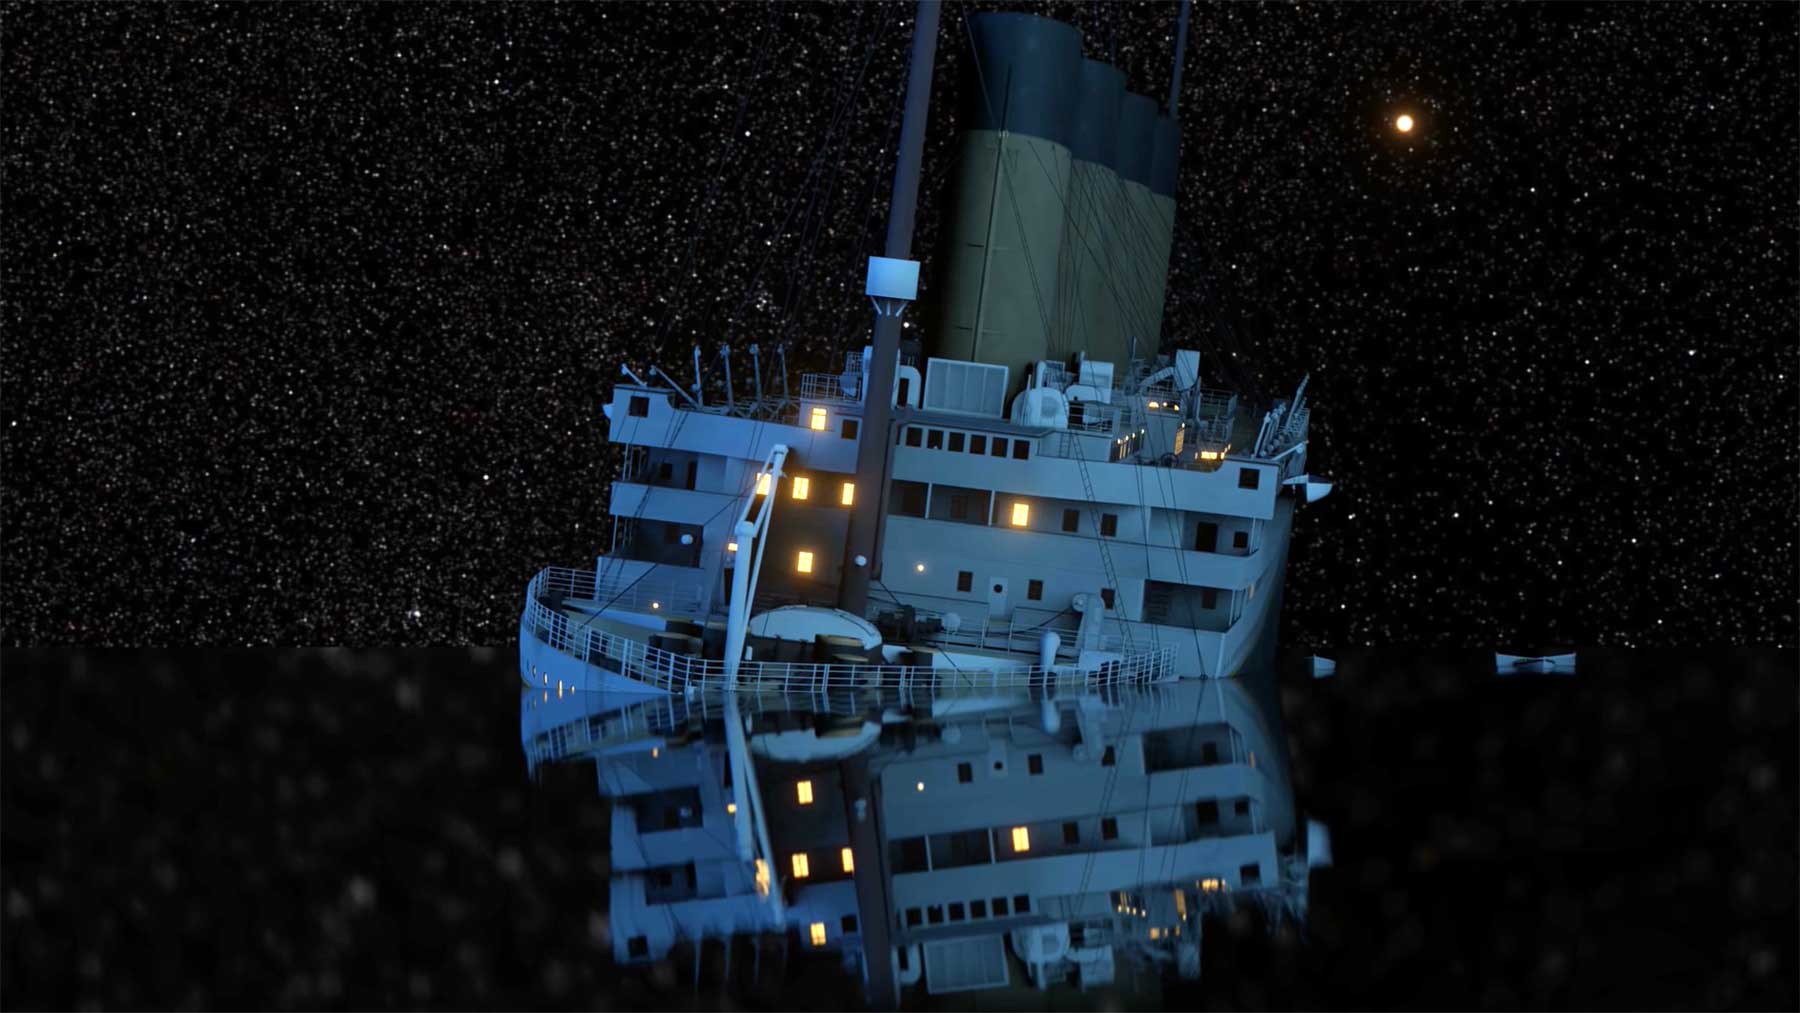 Das Versinken der Titanic in Echtzeit anschauen